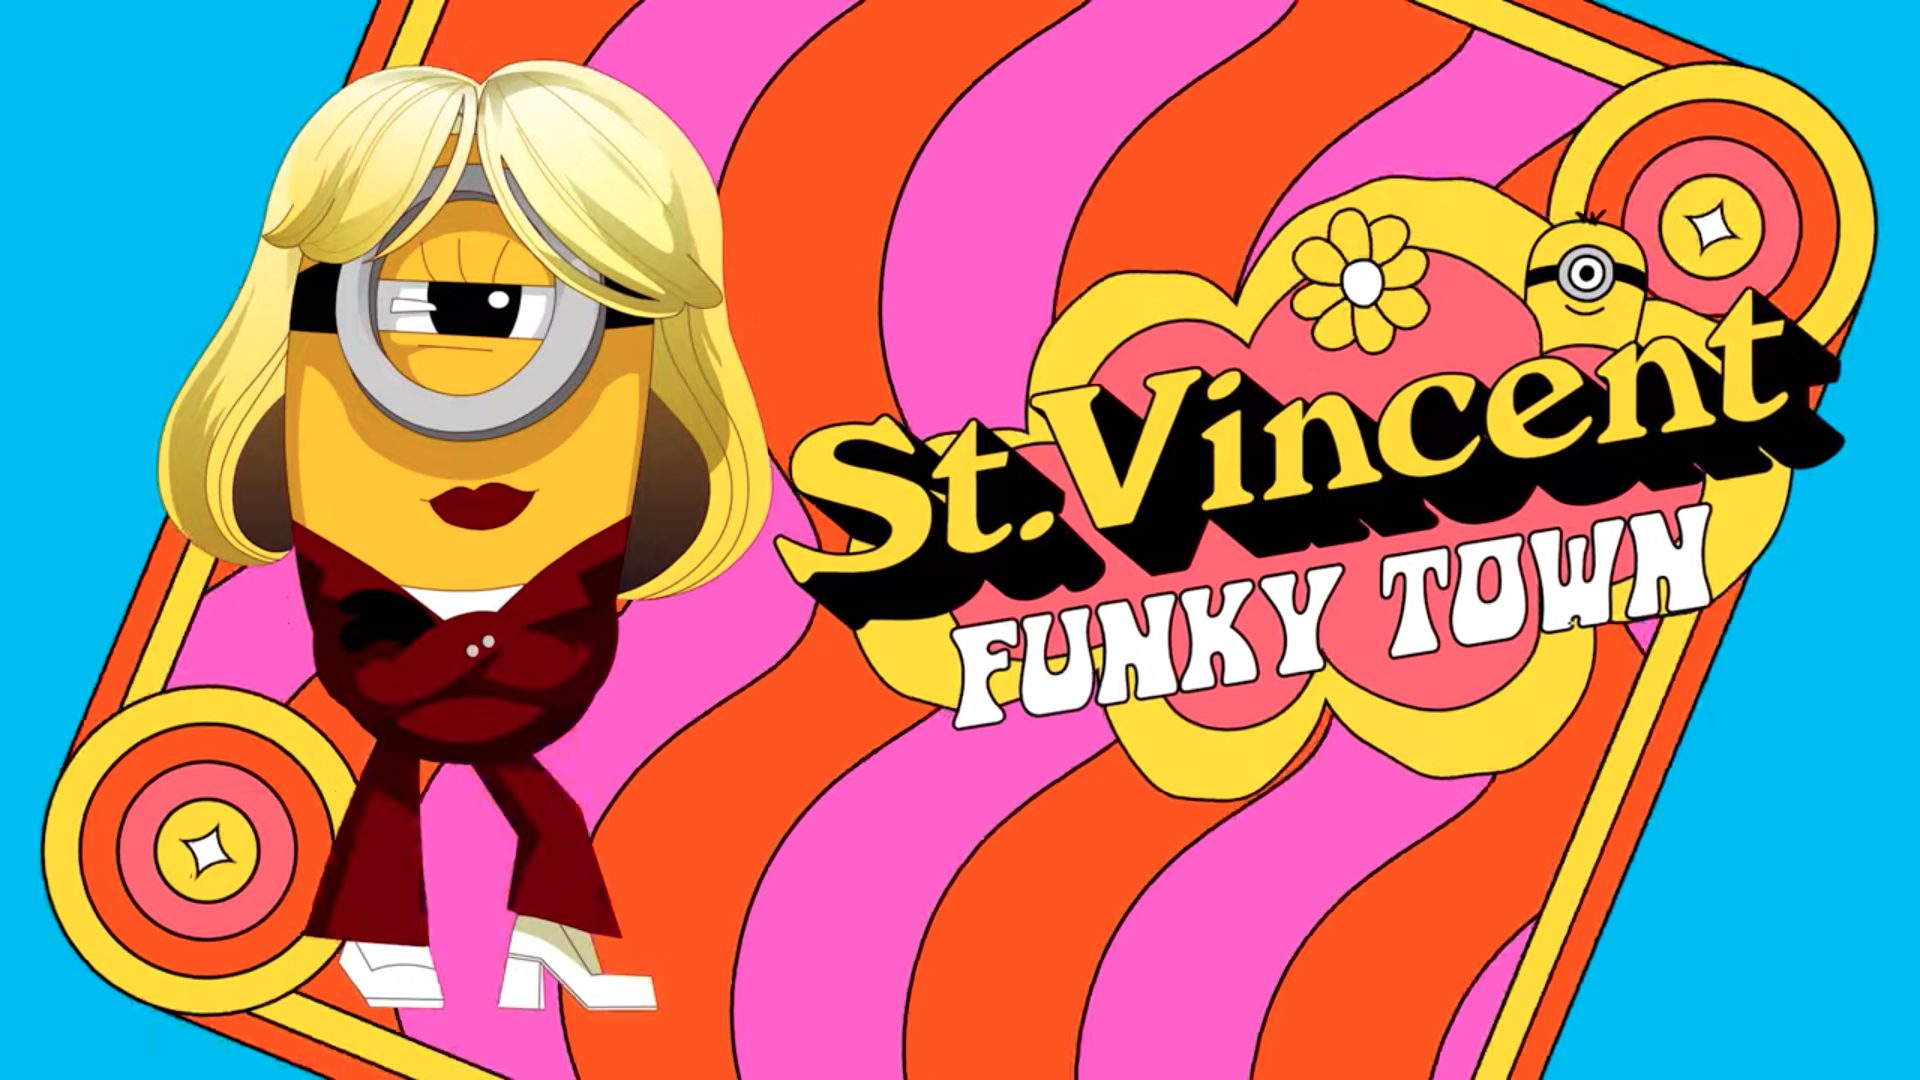 St. Vincent „Funkytown“: Man sieht einen Minion mit einer St. Vincent-Frisur in einem Disco-Overall.